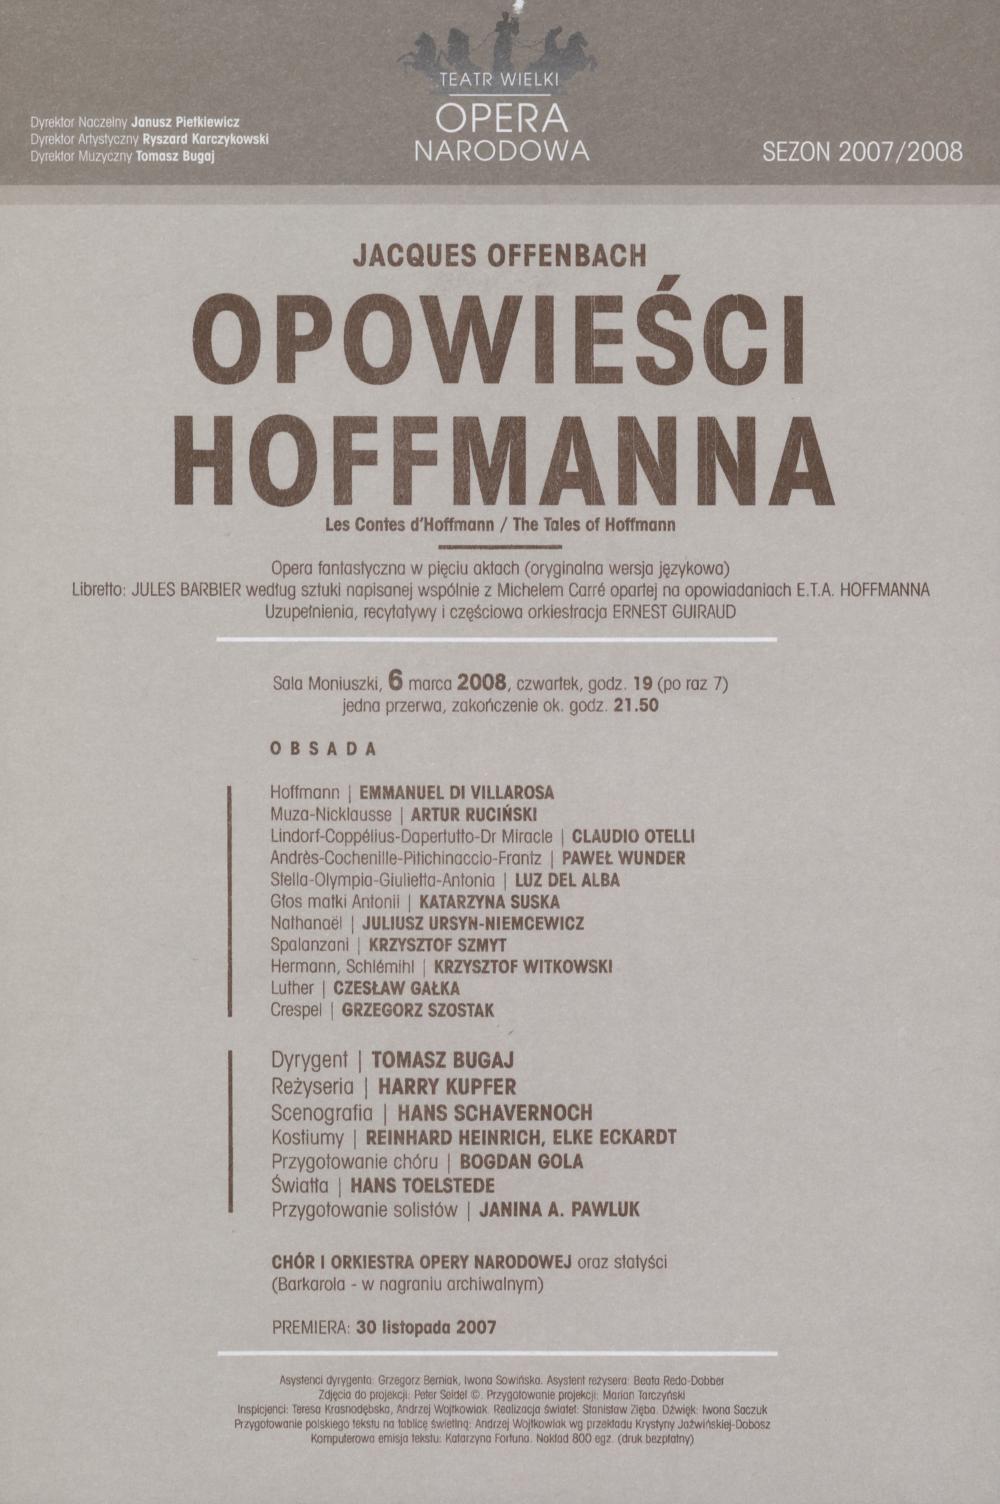 Wkładka obsadowa „Opowieści Hoffmanna” Jakub Offenbach 6-03-2008